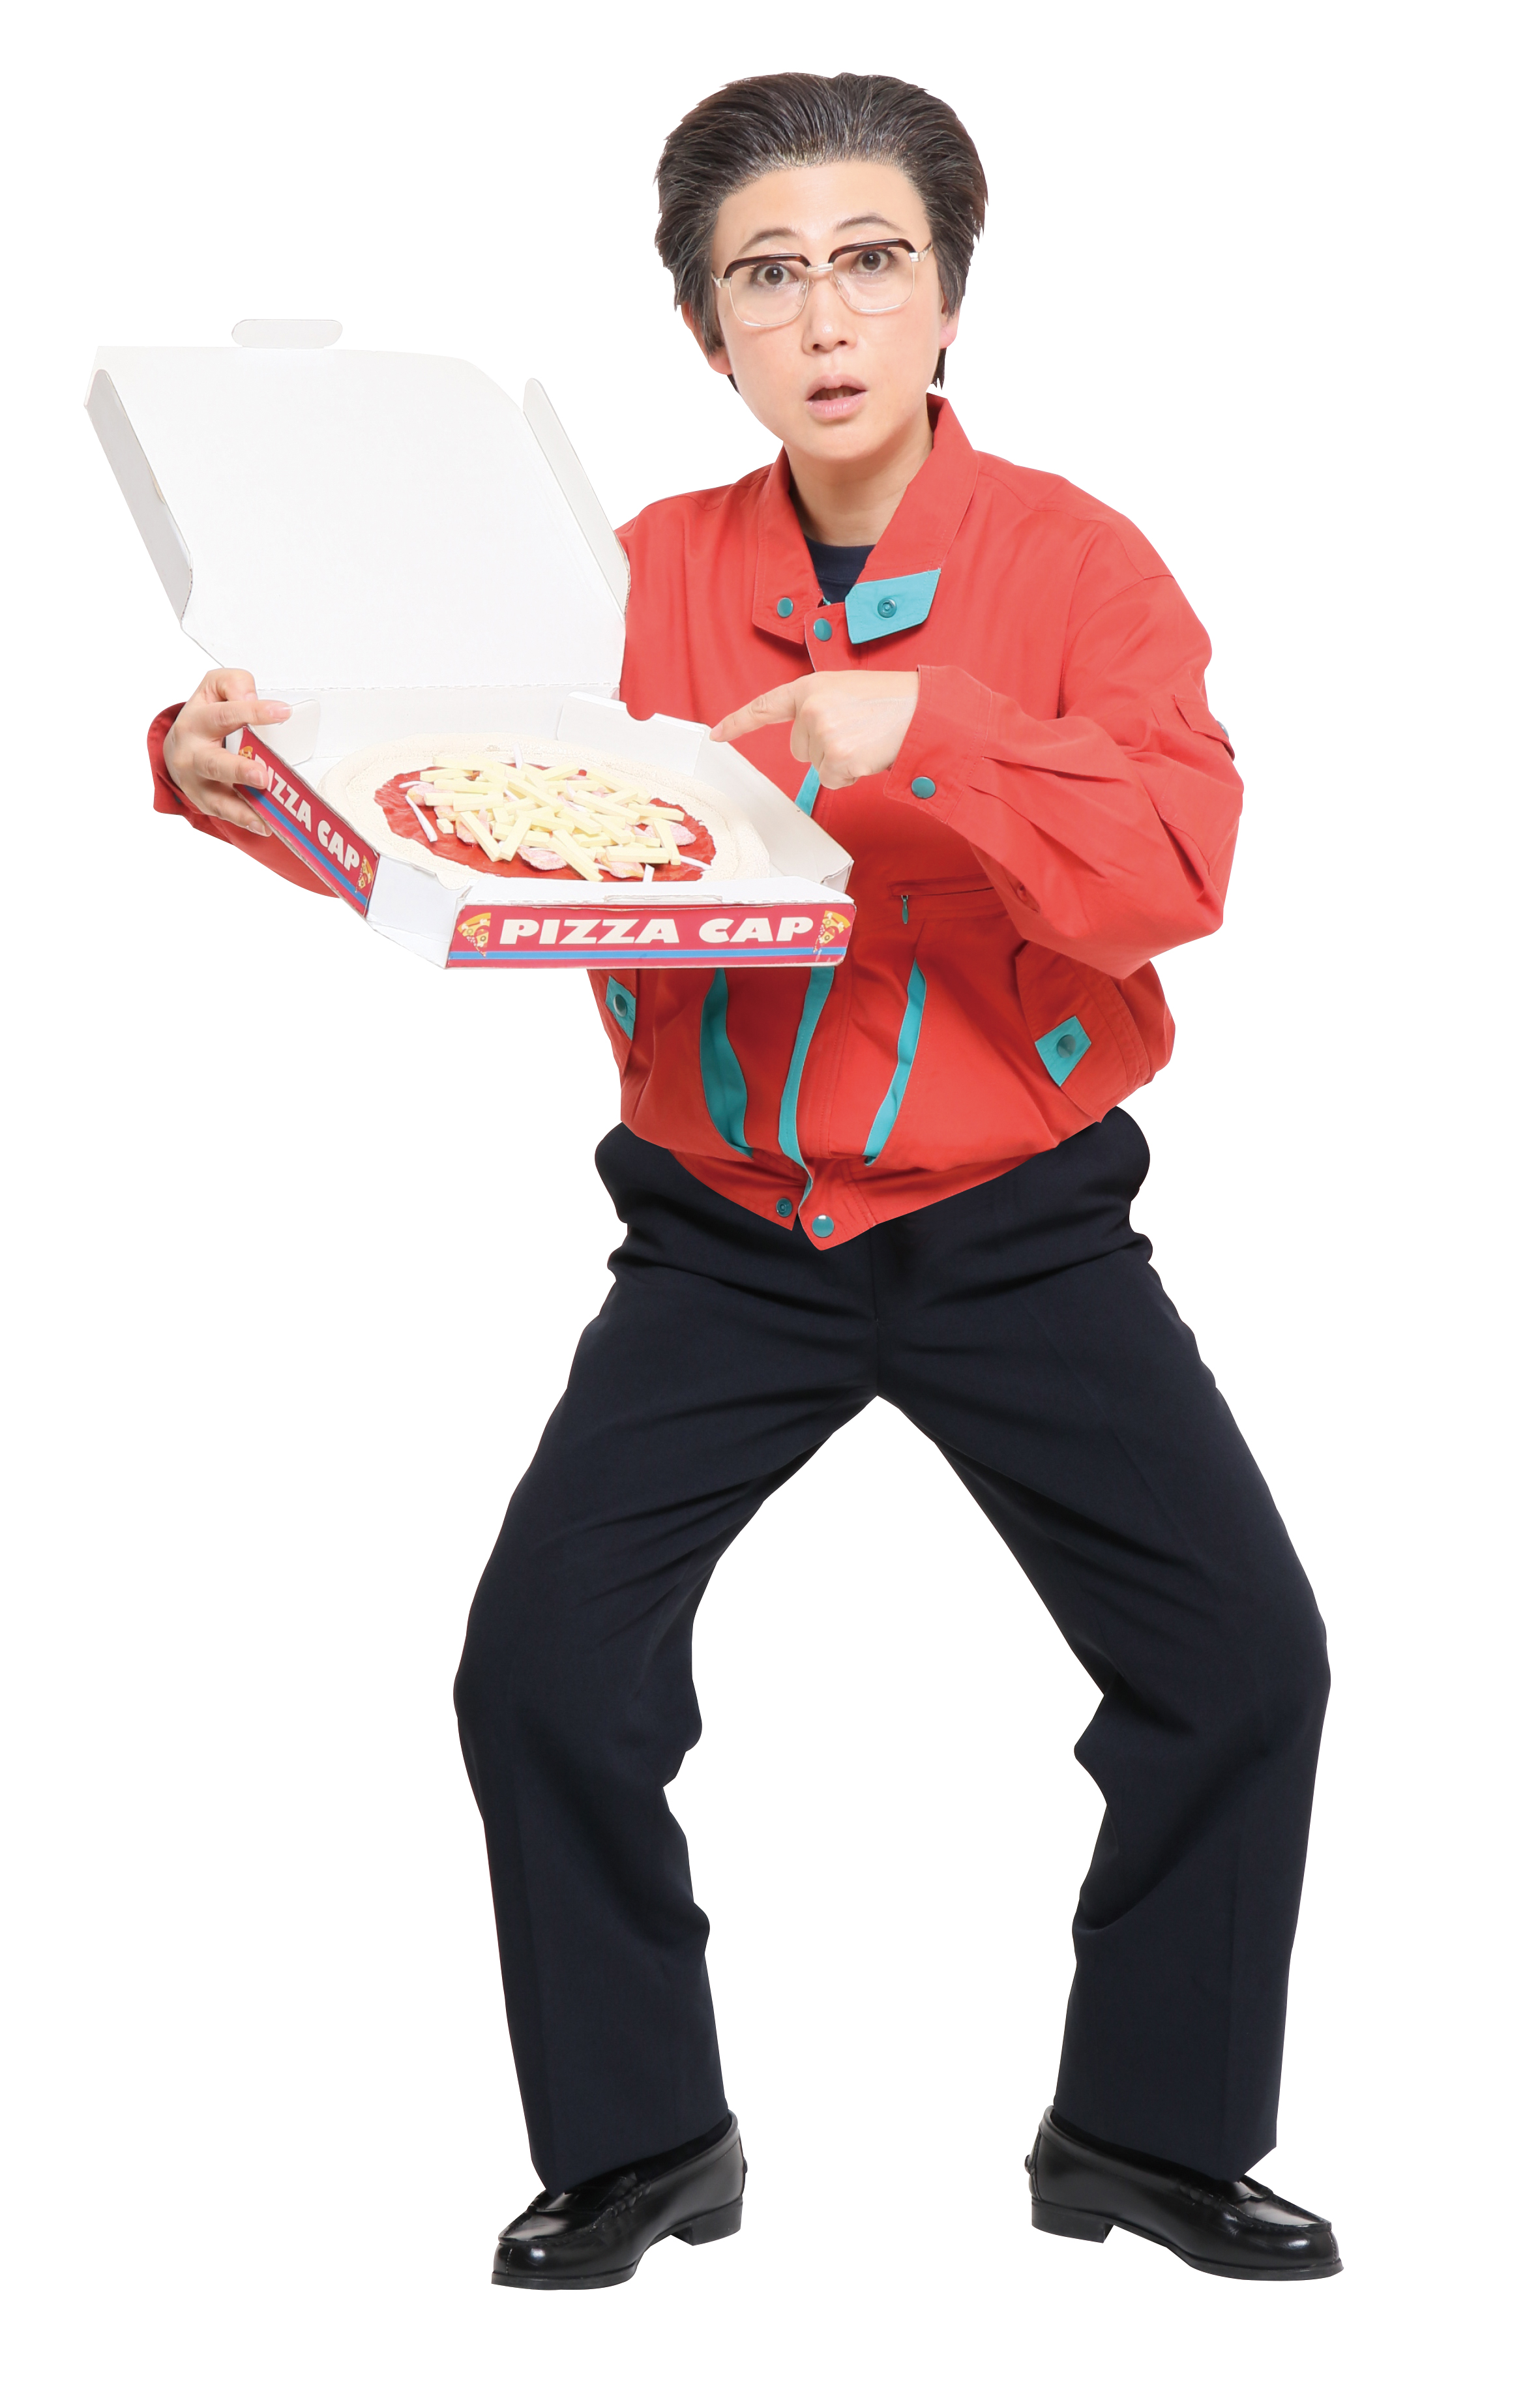 ロフト 芸人友近さん扮する 西尾一男 のピザショップ Pizza Capスタンド 期間限定で銀座ロフトに登場 株式会社ロフトのプレスリリース